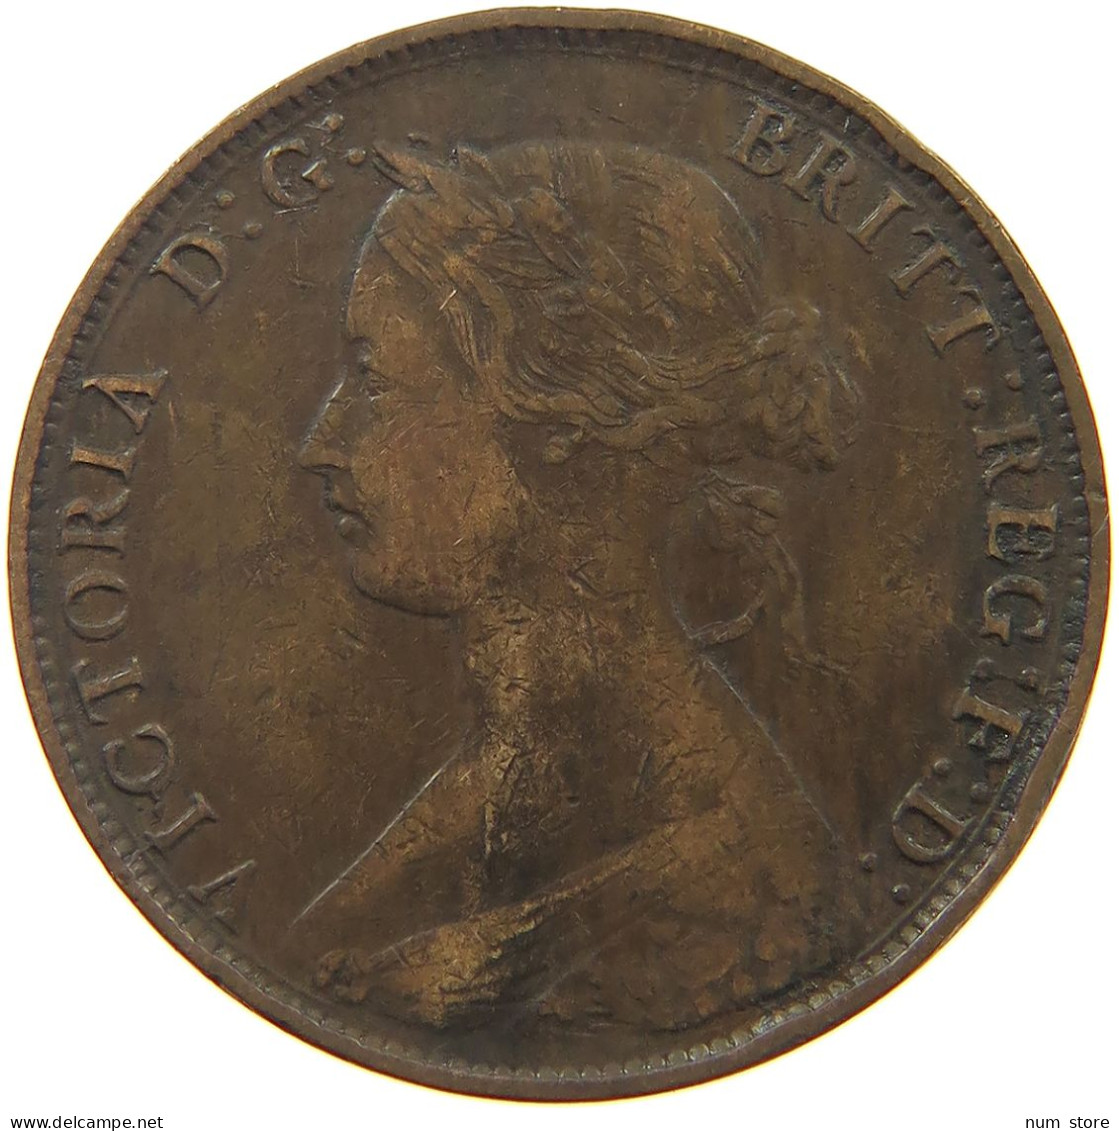 GREAT BRITAIN HALFPENNY 1861 Victoria 1837-1901 #c071 0535 - C. 1/2 Penny